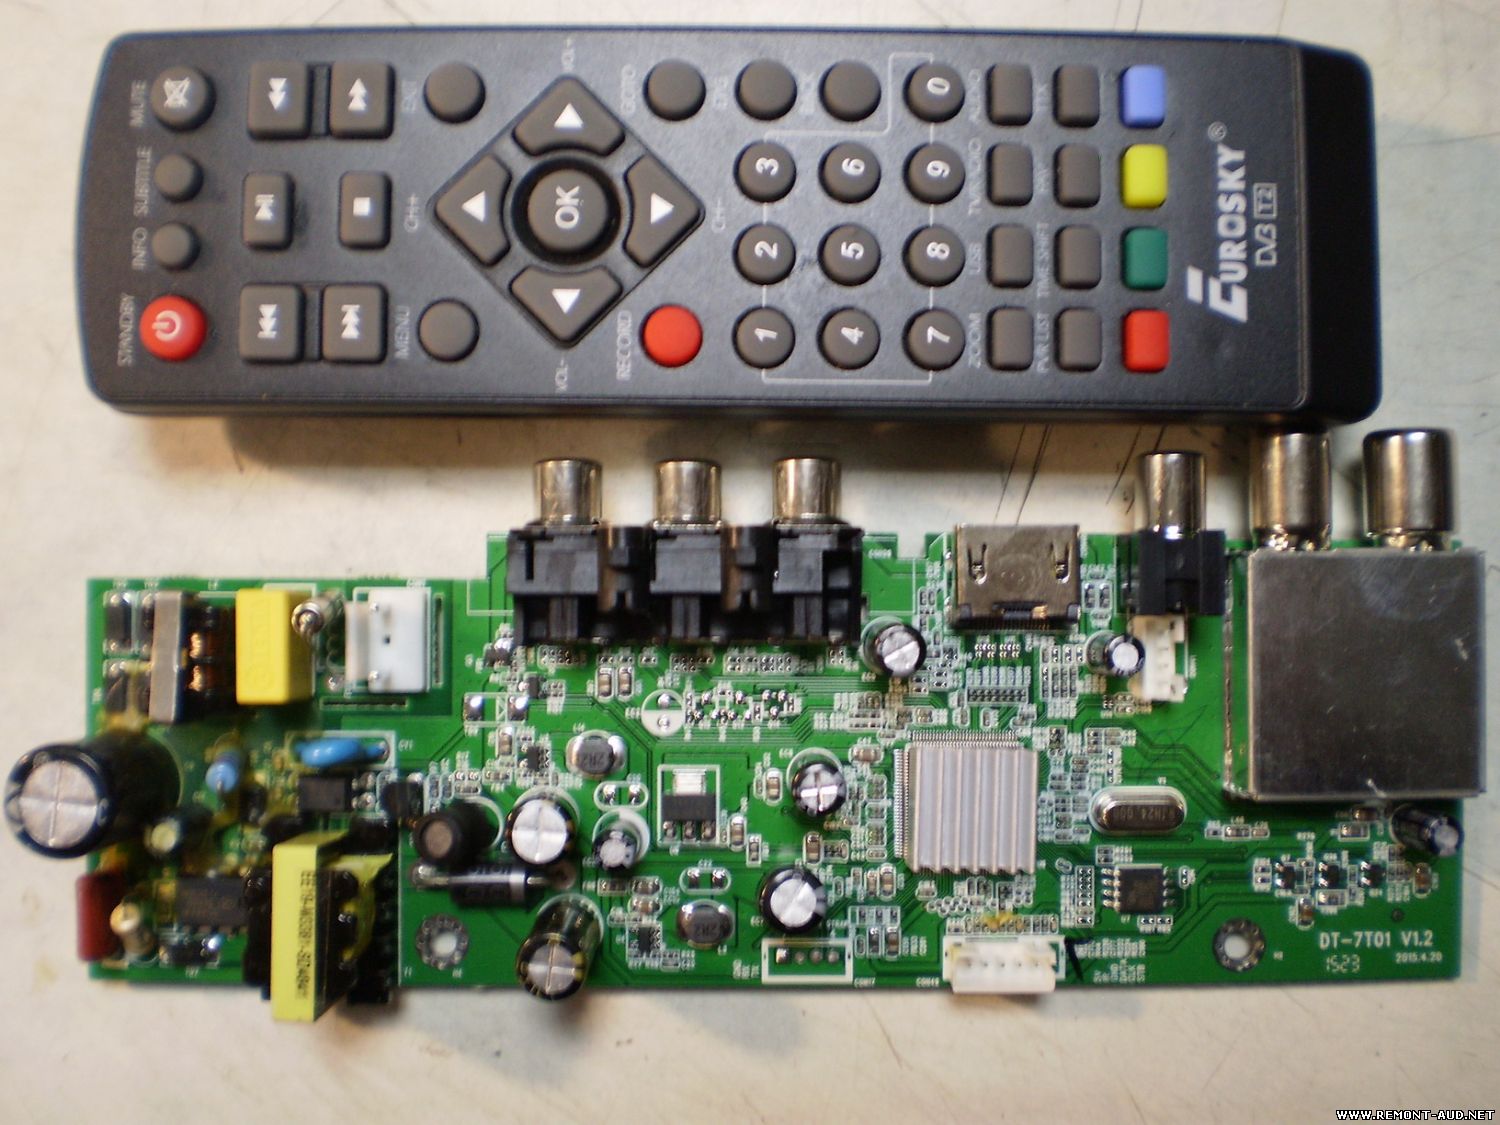 Приставки dvb t2 dvb c. TV-тюнер Eurosky es-3021. Приставка DVB-t2 Openbox. Т2 тюнер опенбокс. Eurosky es-3021 блок питания.